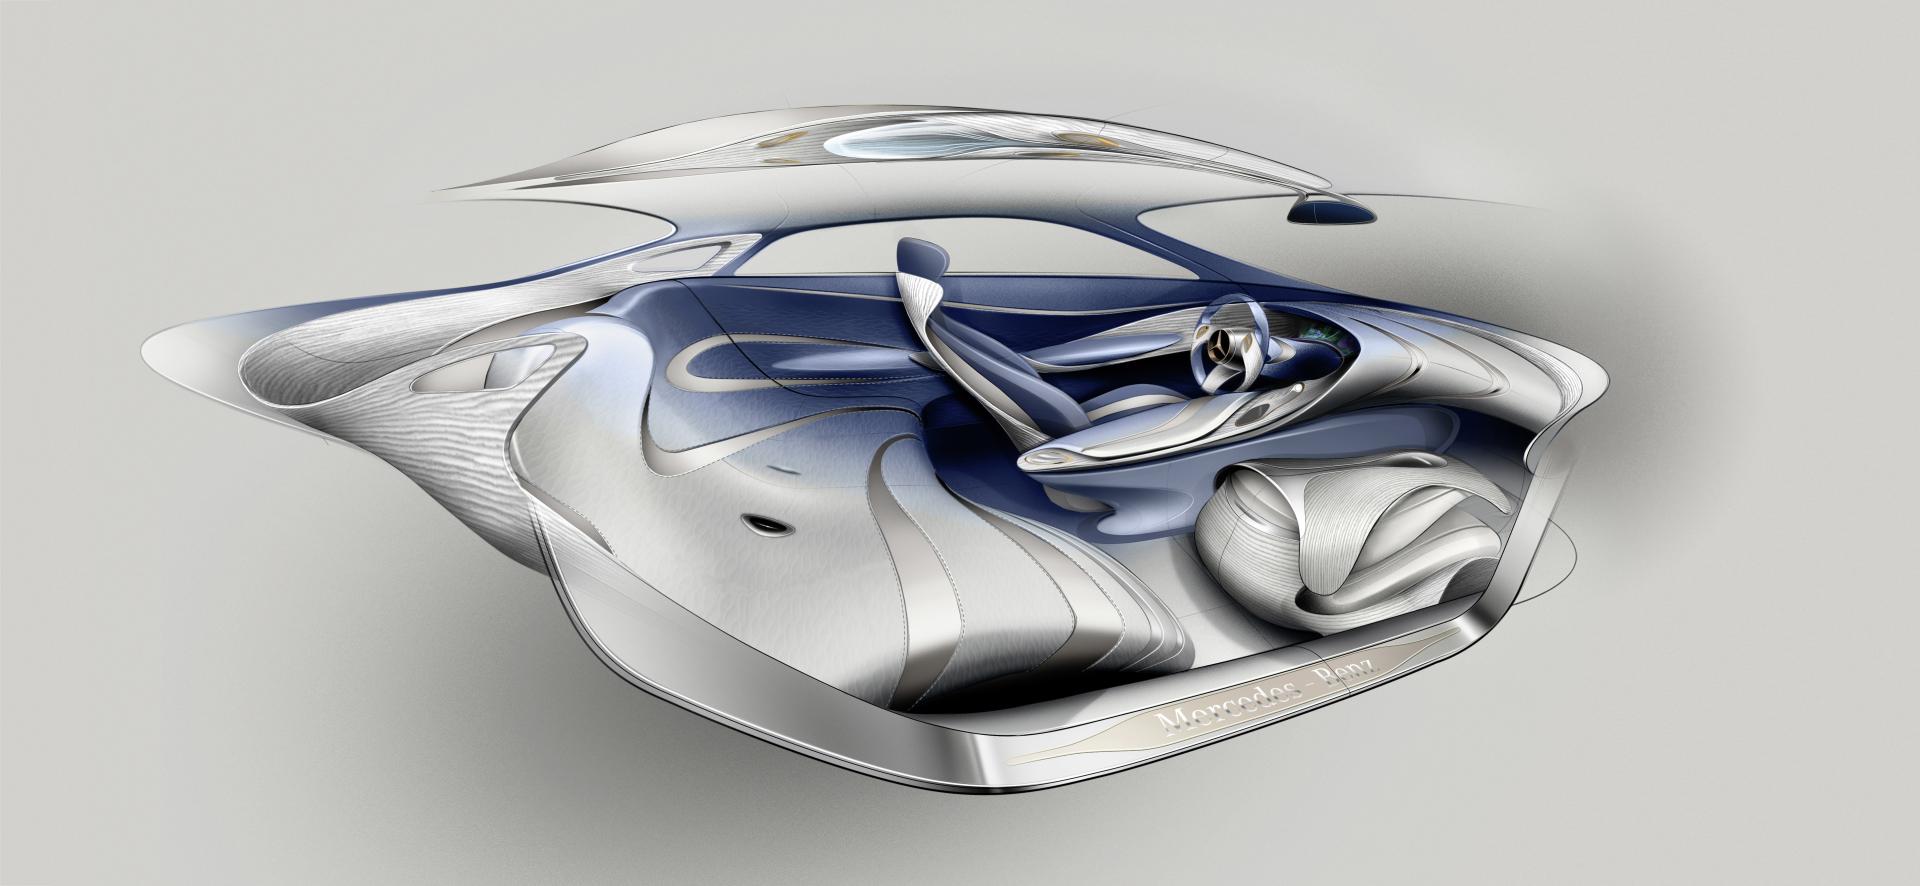 2012 Mercedes-Benz F 125! Concept